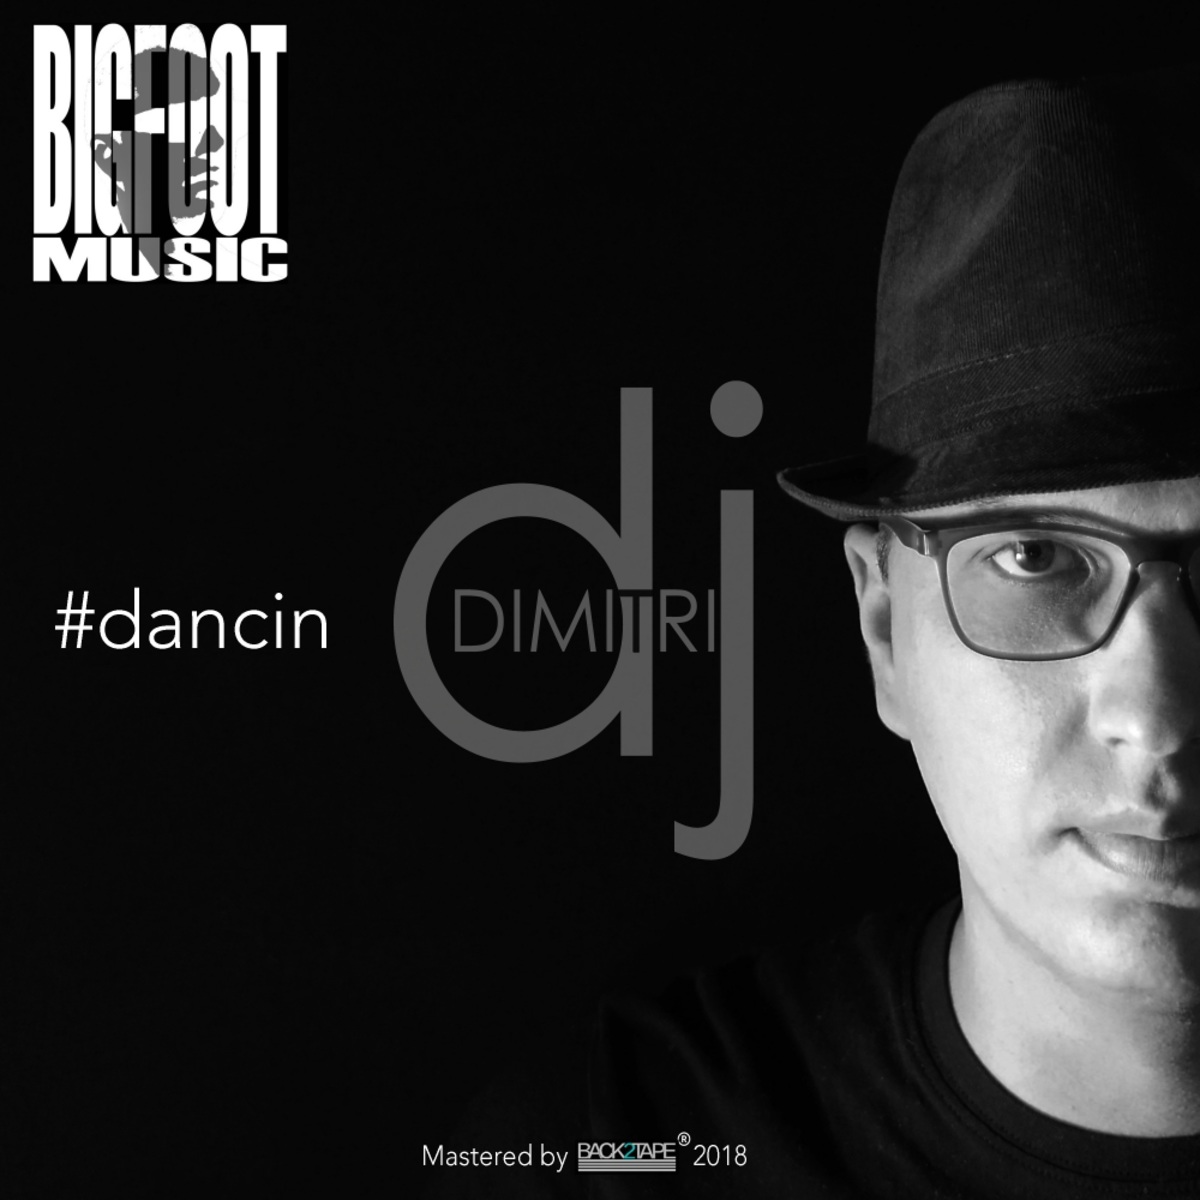 Dimitri Dj - Dancin / Bigfoot Music